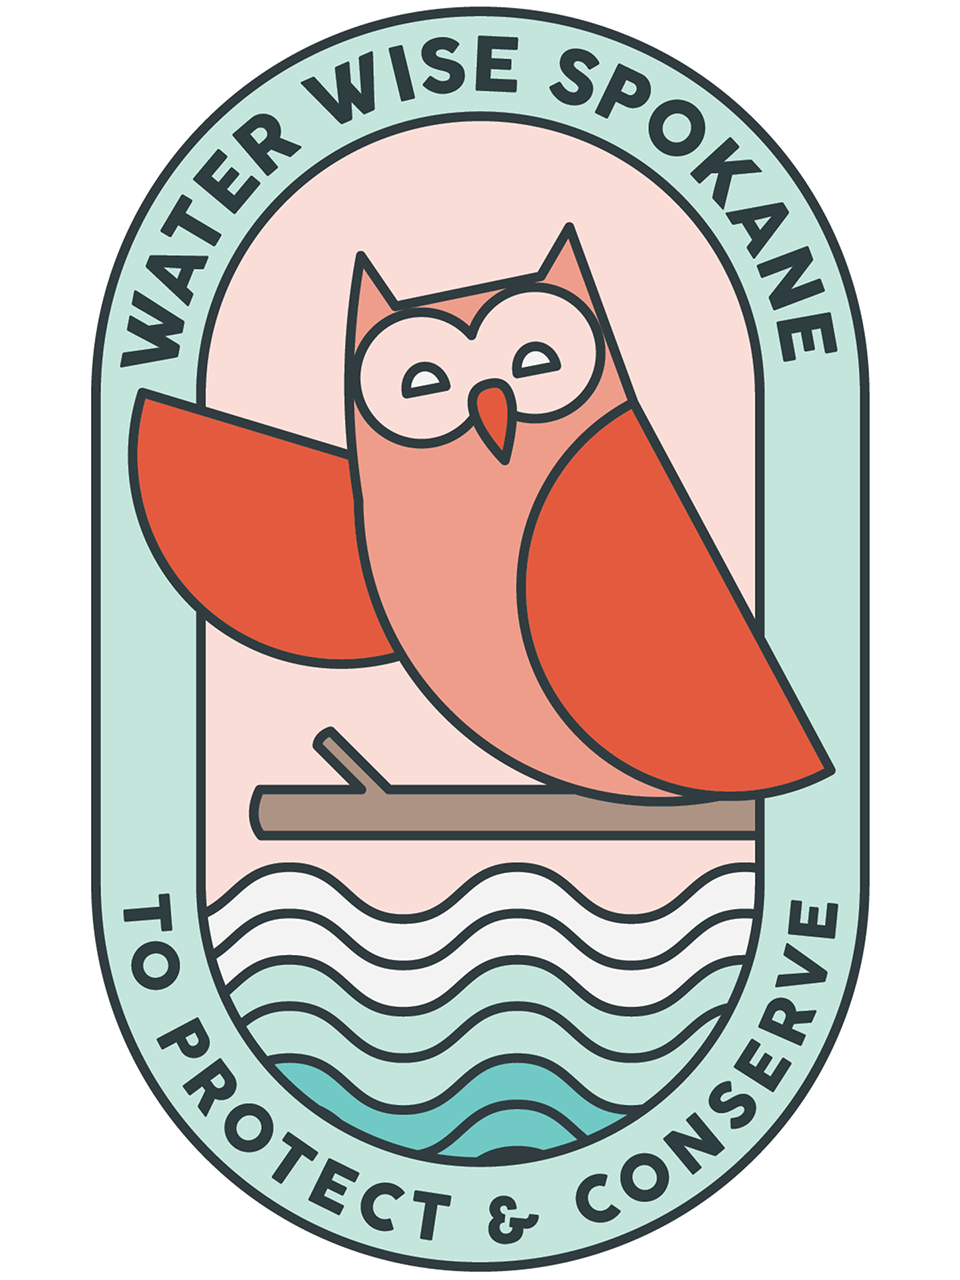 Water Wise Spokane Owl